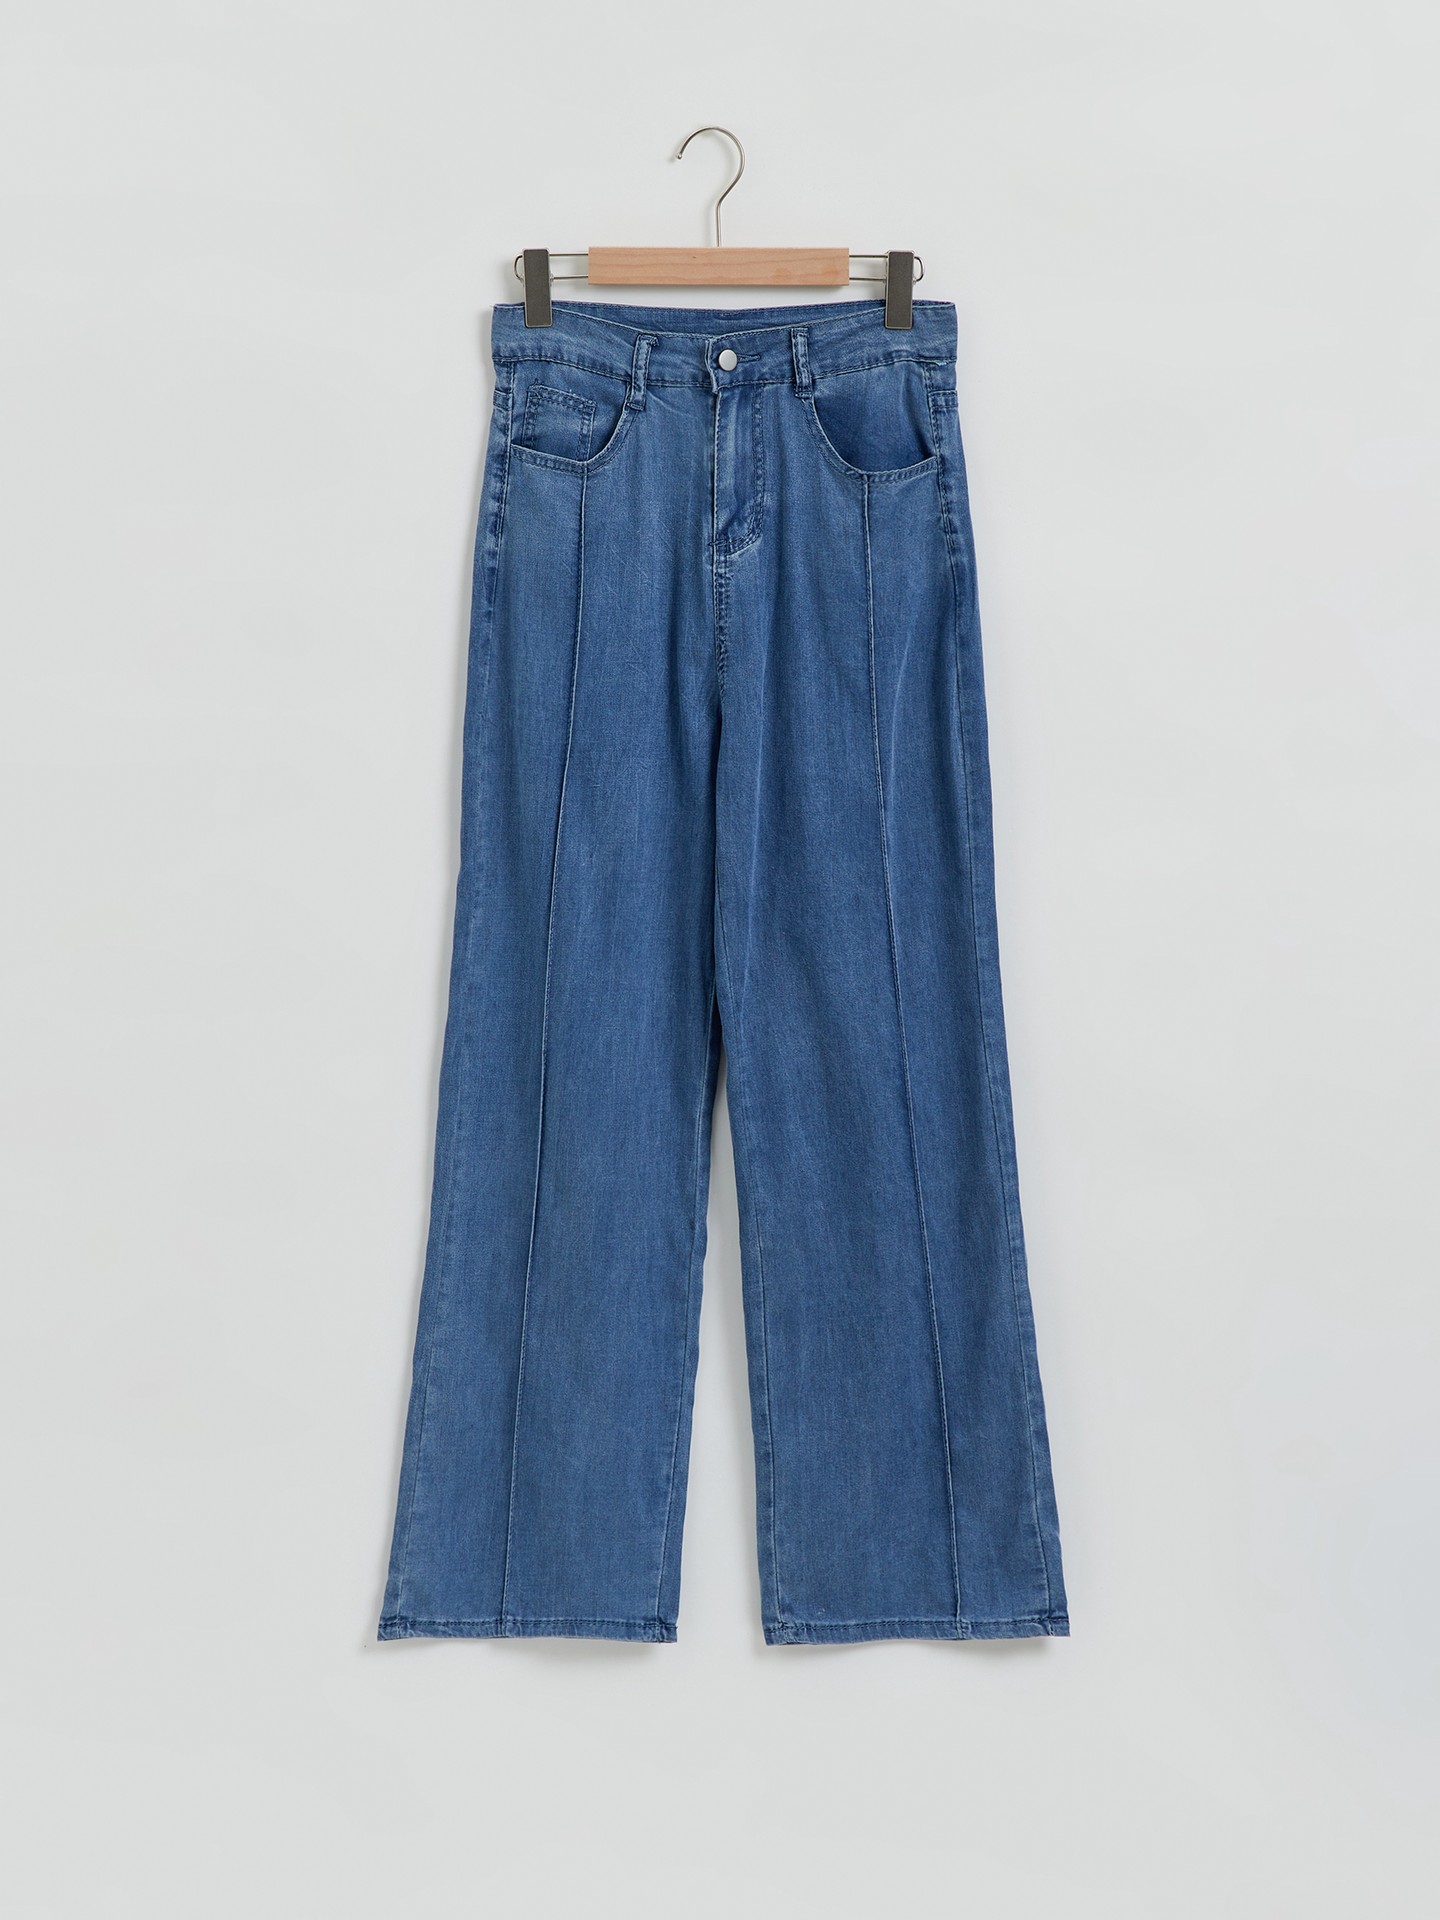 Mais Jeans Cintura alta Bloco de cores Acabamento bruto Perna Larga   Combinações jeans com jeans, Roupas recicladas, Calça jeans para perna larga